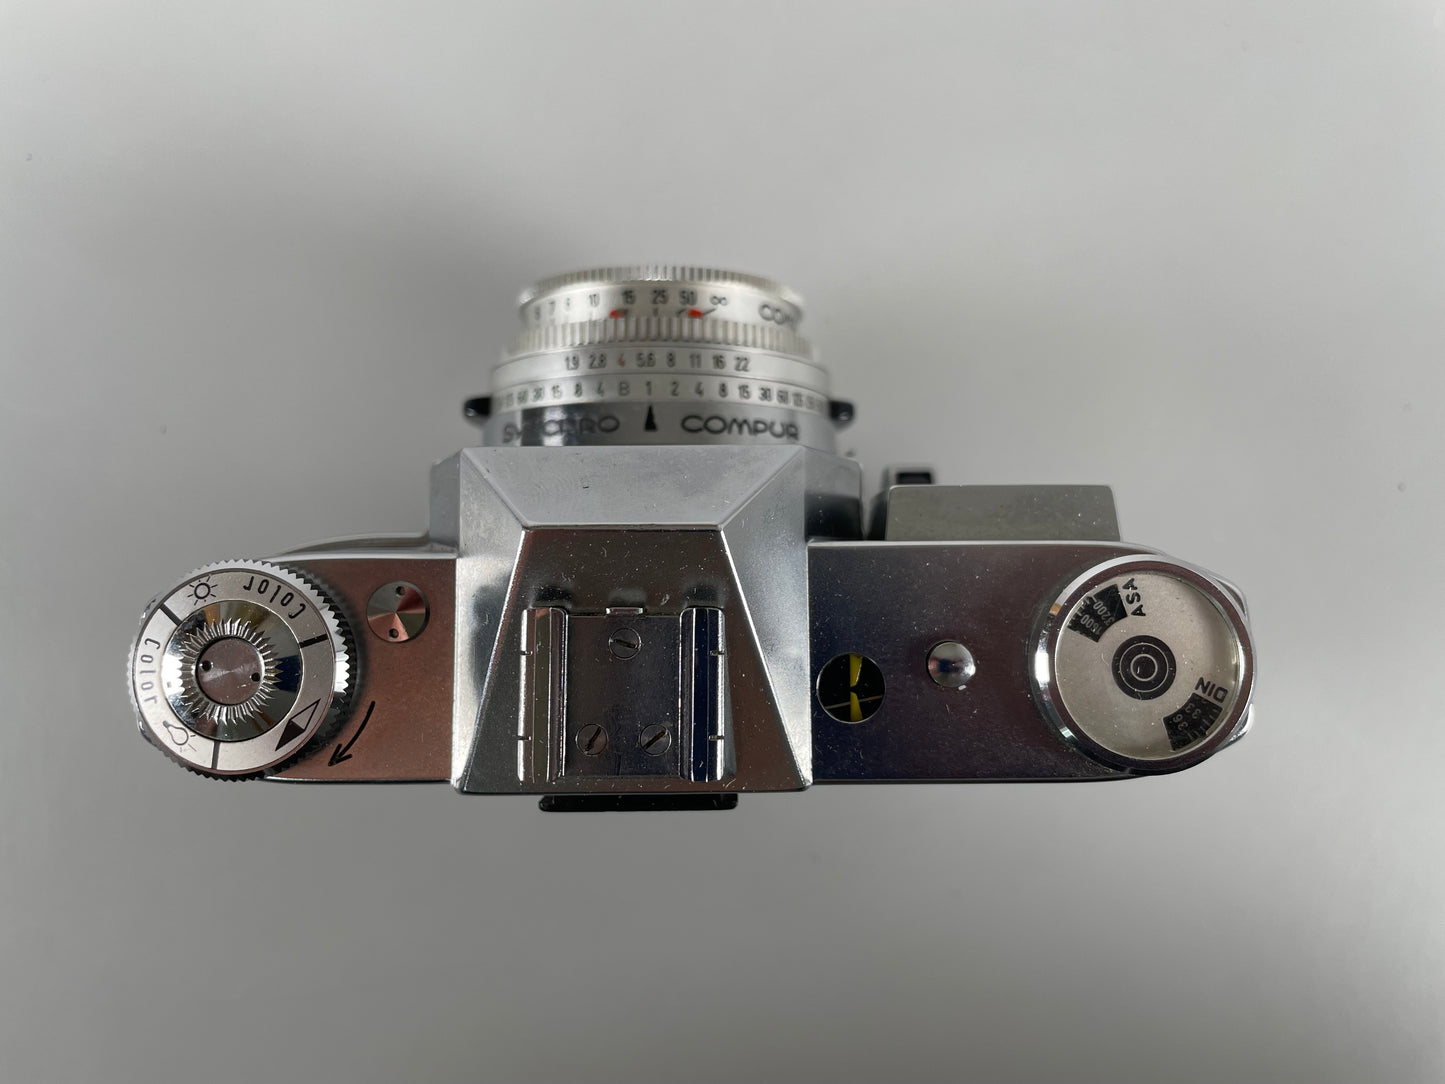 Kodak Retina Reflex III 35mm SLR Film Camera with 50mm f2.8 Lens